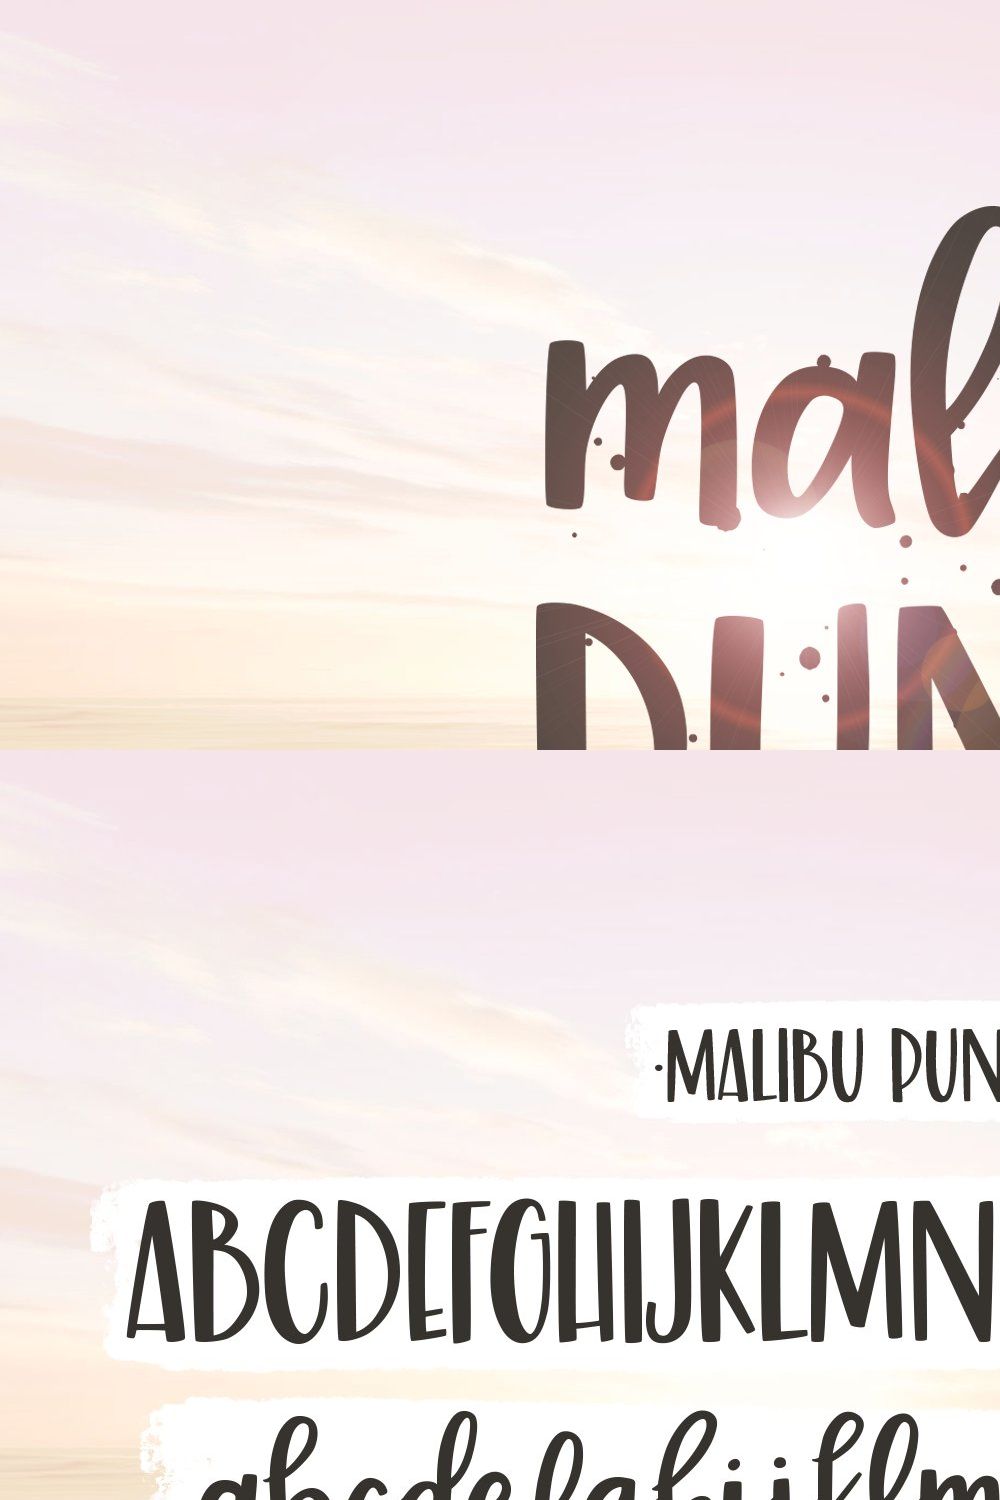 Malibu Punch, a flirty brush font pinterest preview image.